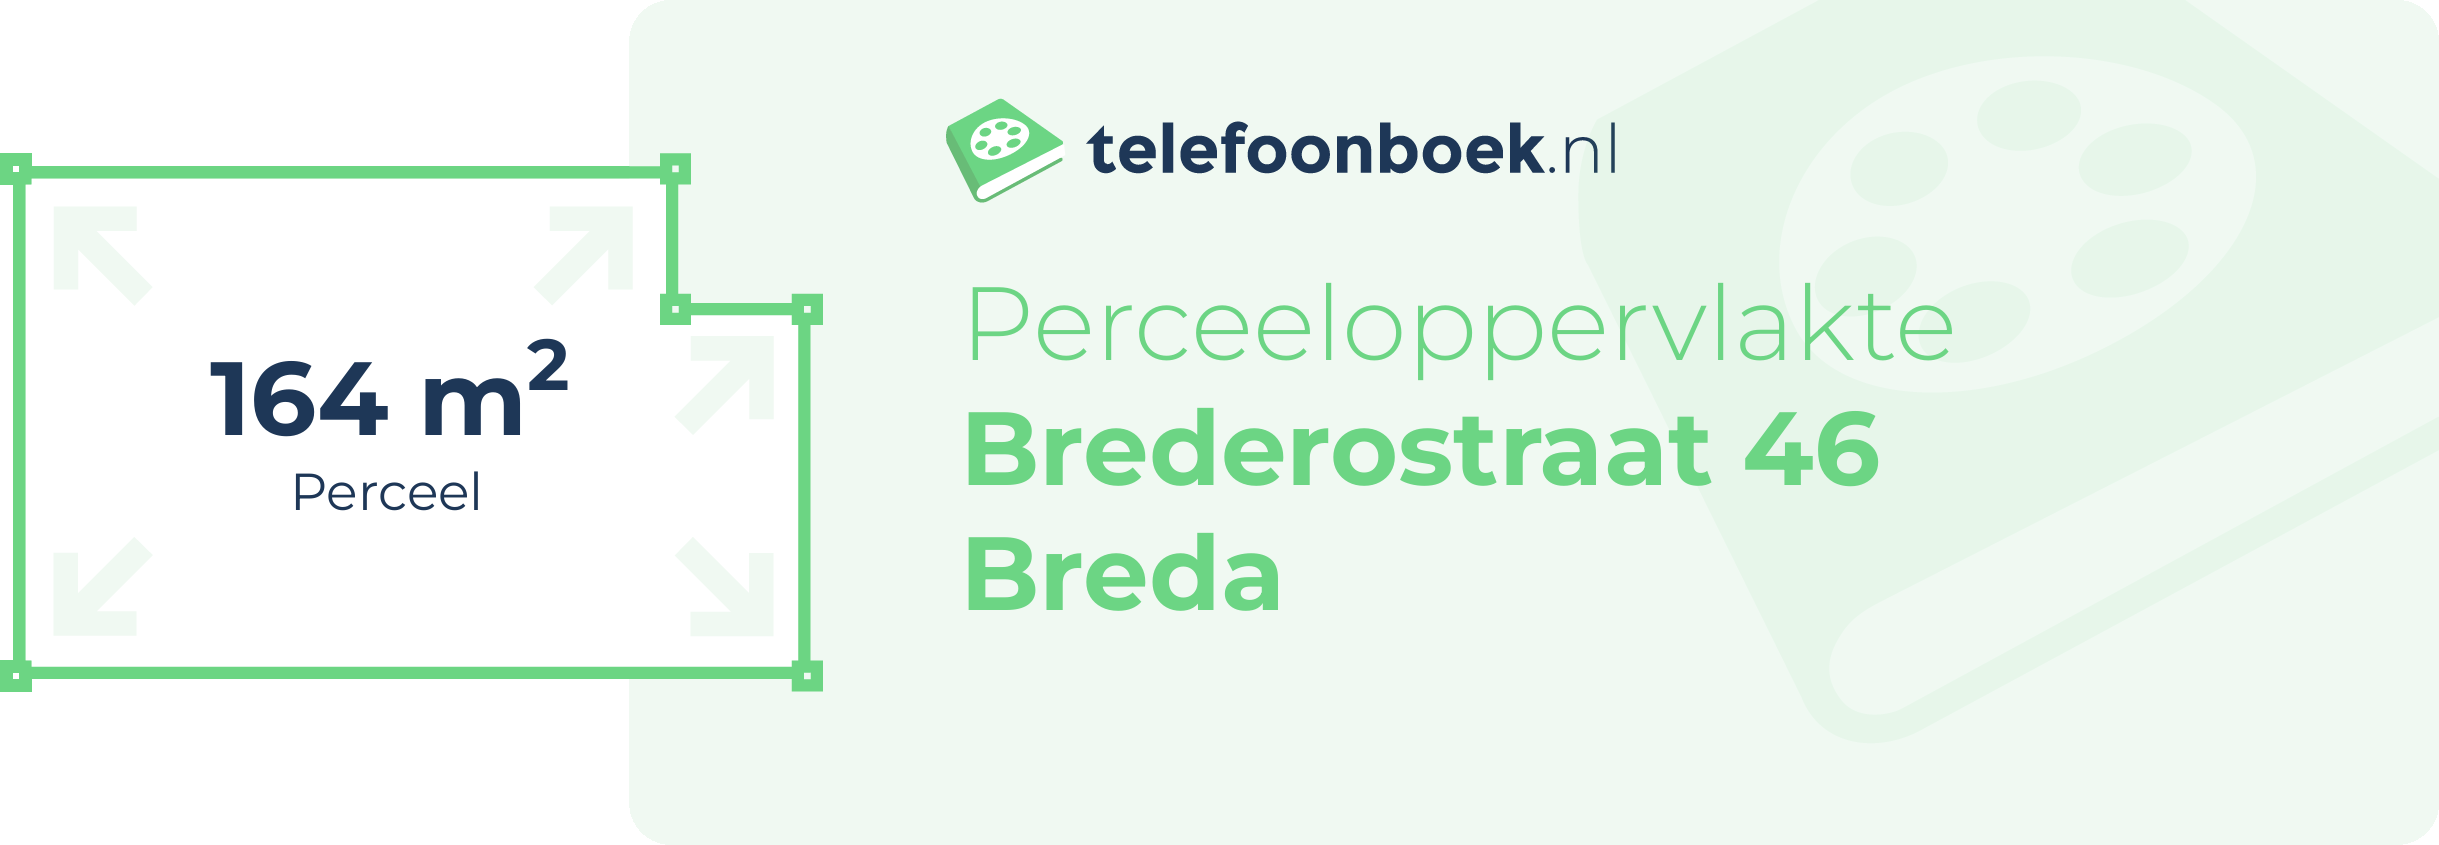 Perceeloppervlakte Brederostraat 46 Breda